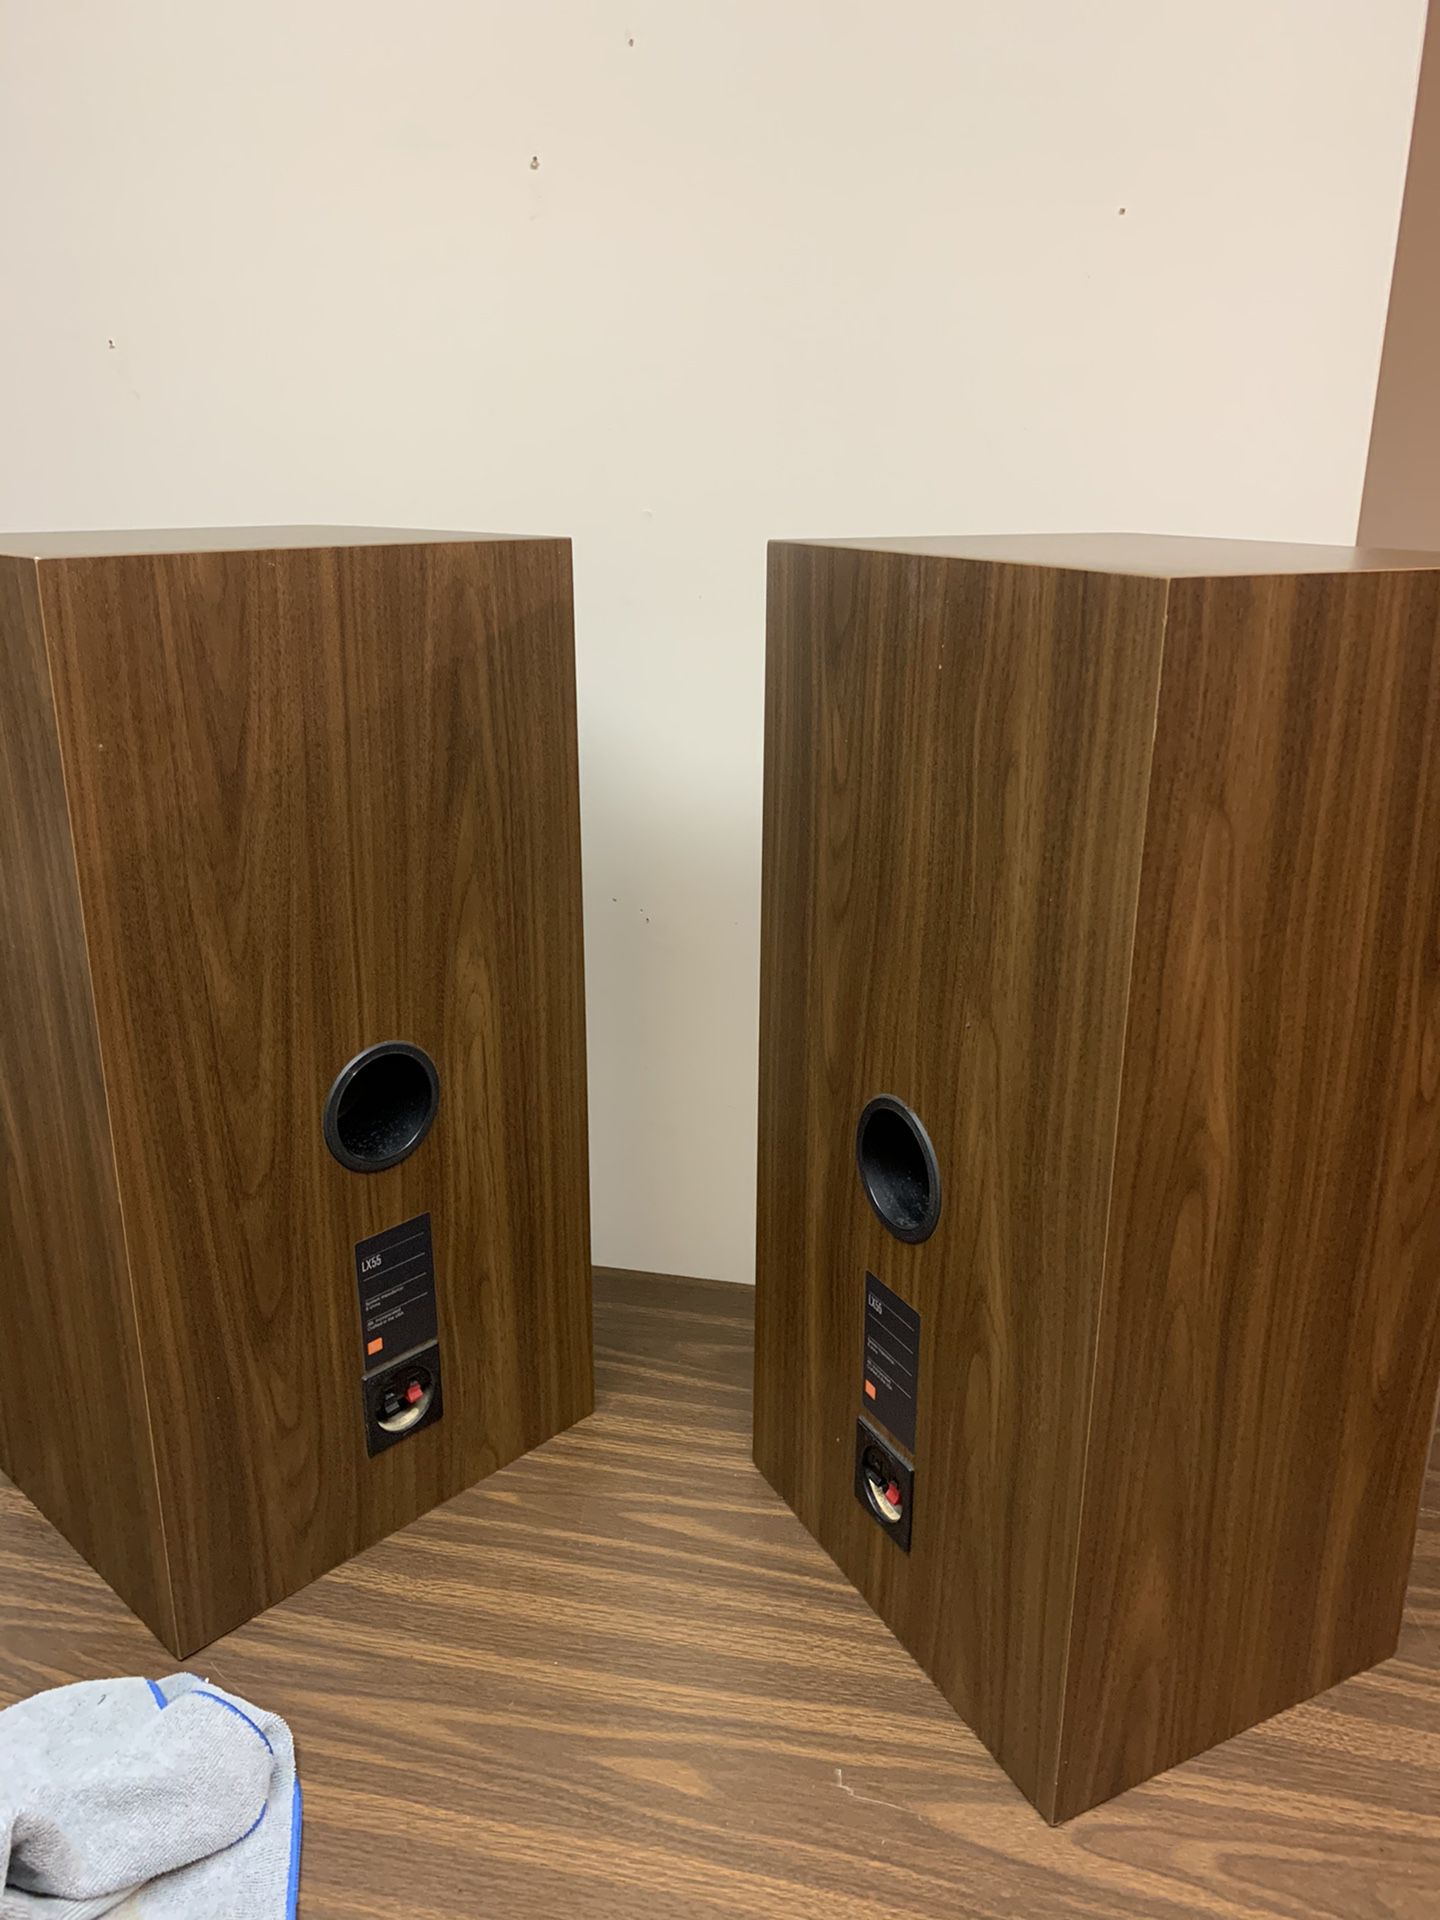 Vintage Pair of JBL LX55 Speakers for Sale in OfferUp